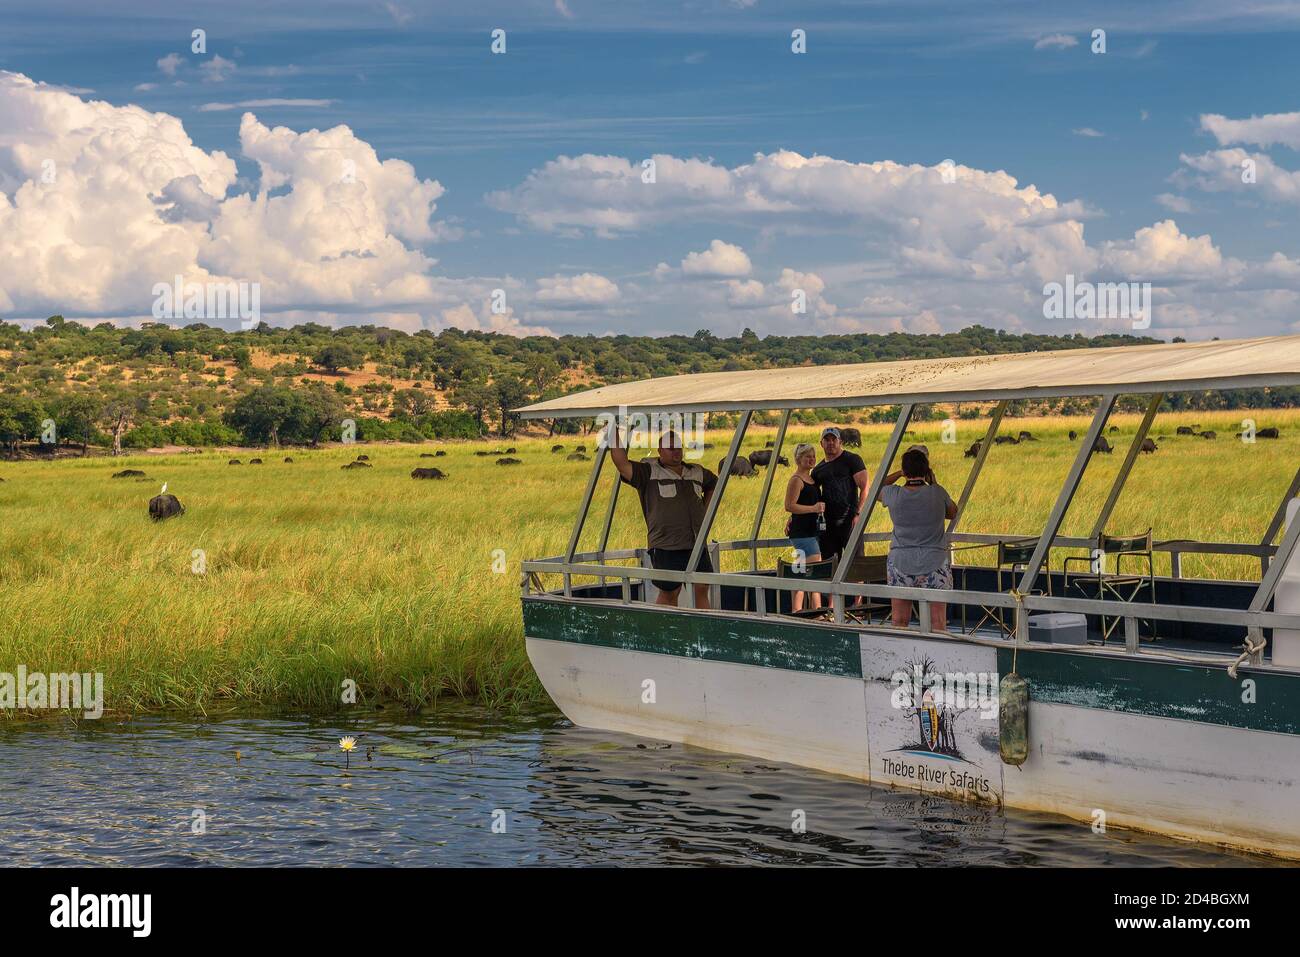 Les touristes dans un bateau observer les éléphants le long de la rivière Chobe, au Botswana, l'Afrique Banque D'Images